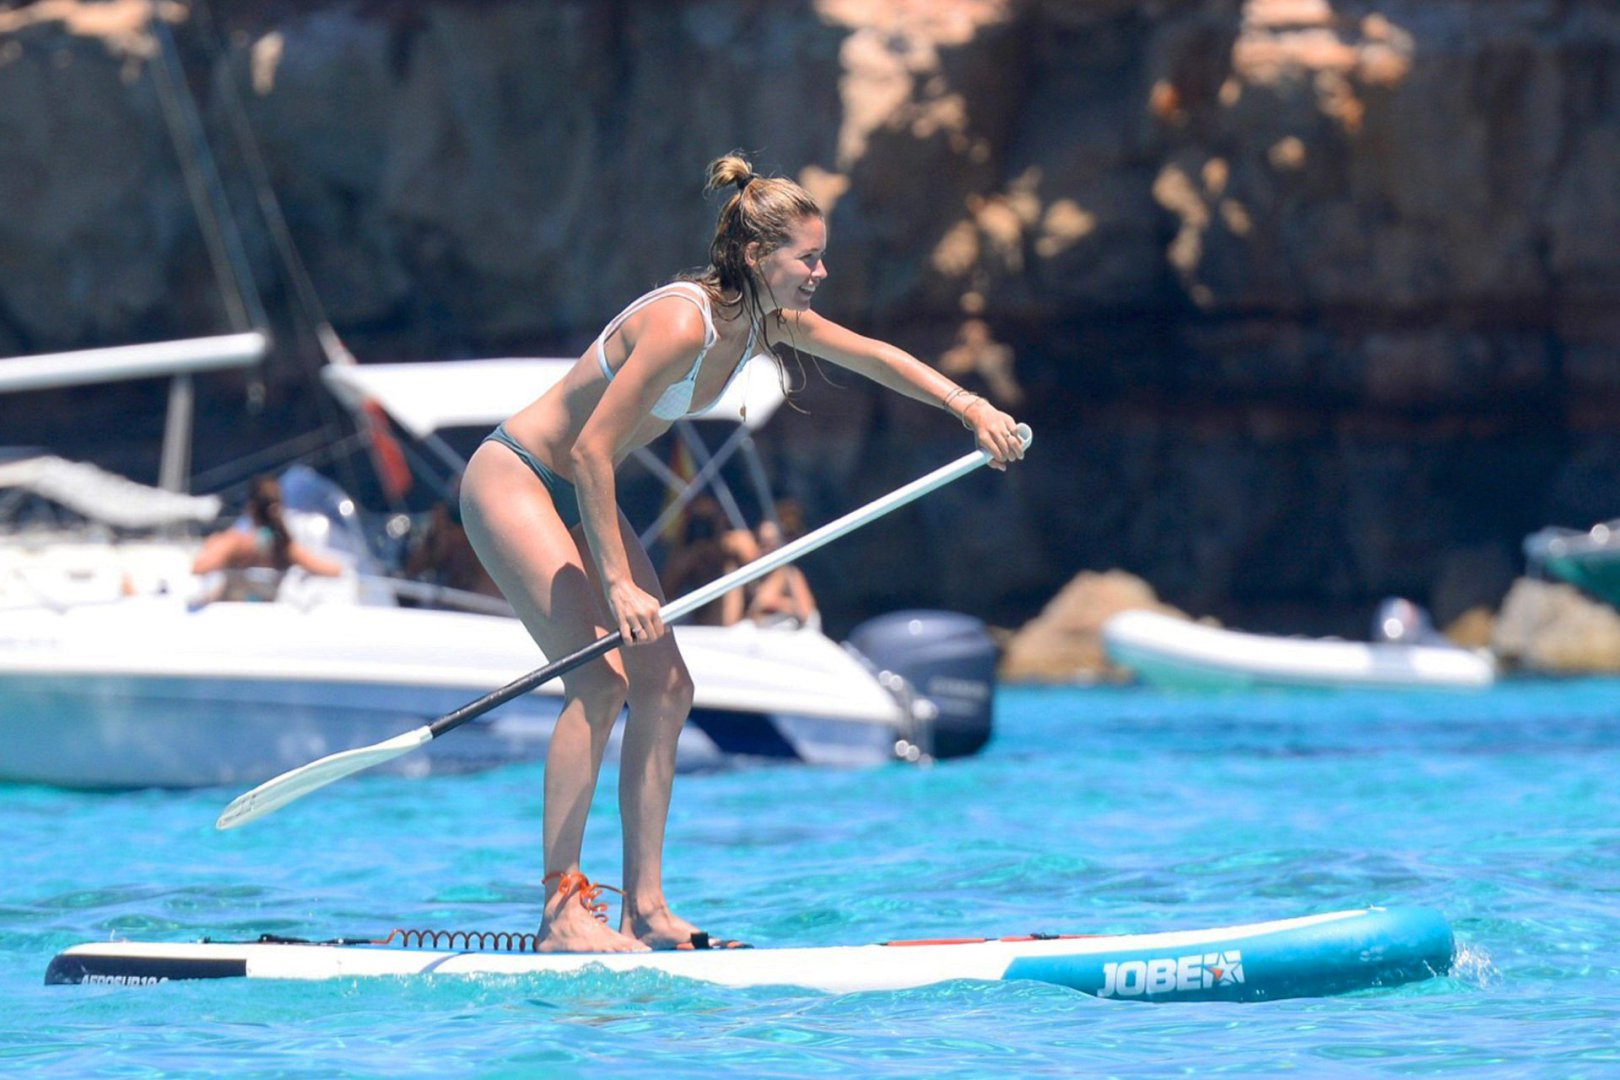 Doutzen Kroes w bikini wypoczywa na wodzie